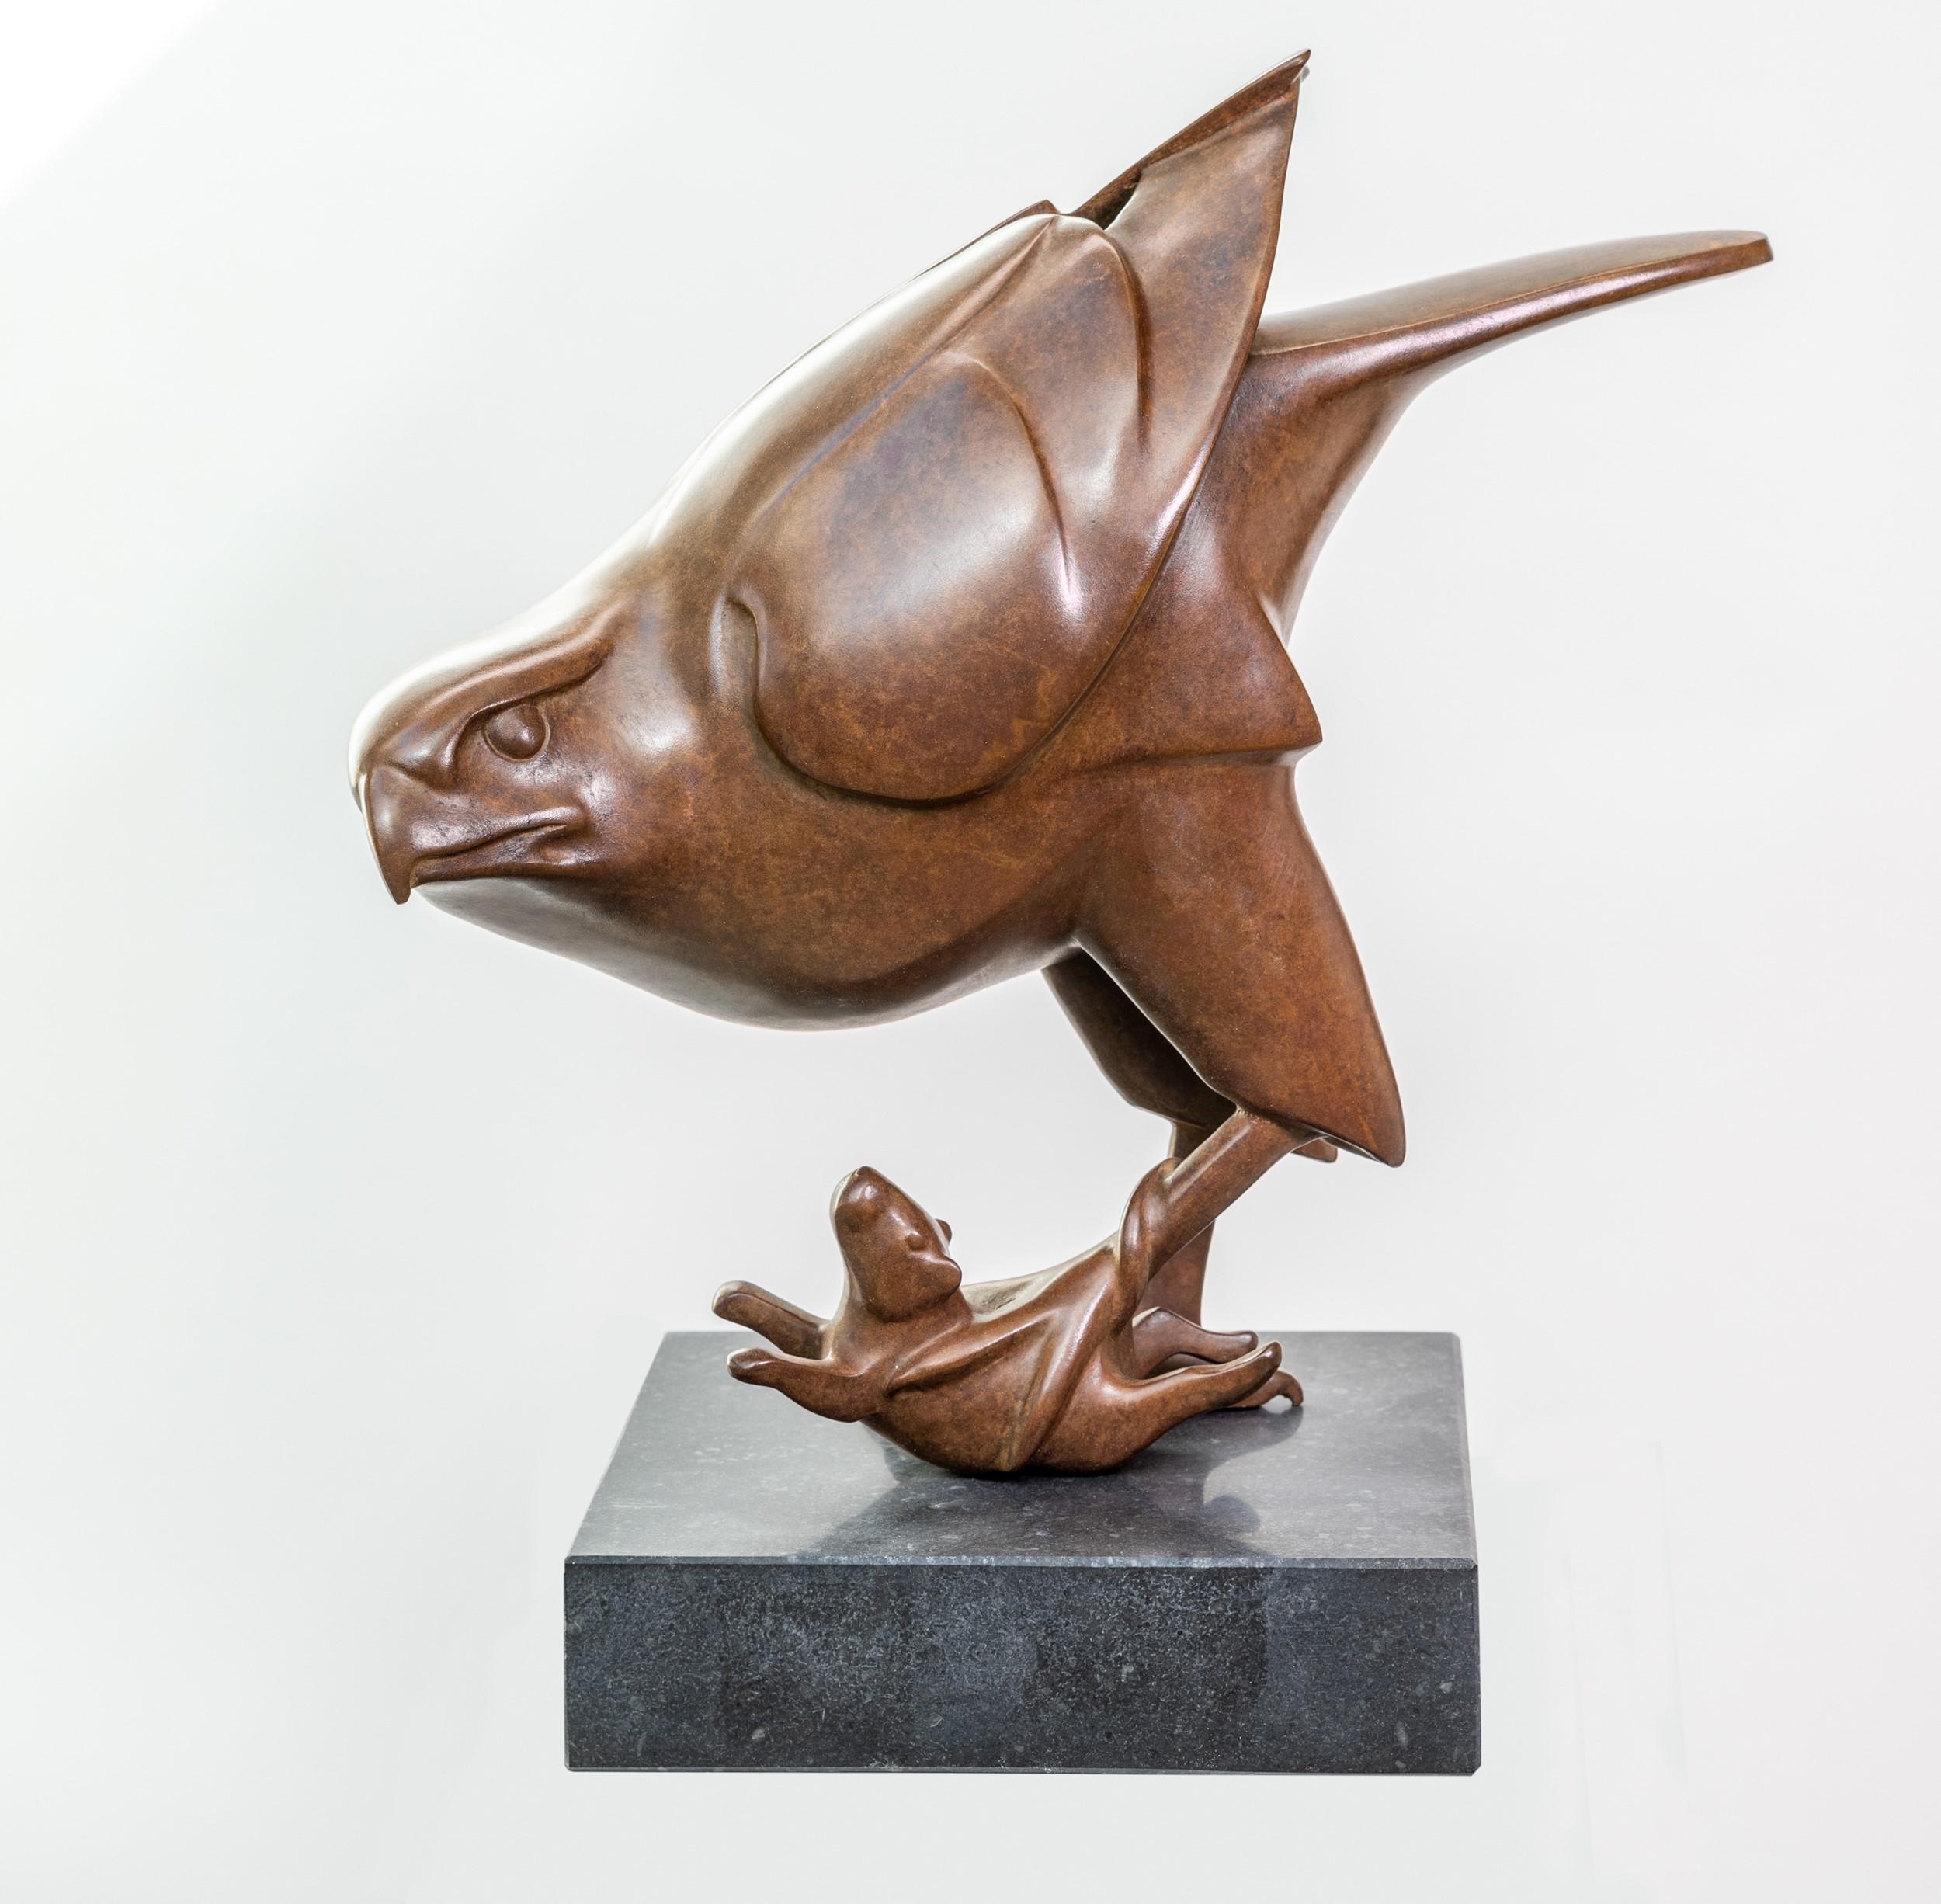 Figurative Sculpture Evert den Hartog - Roofvogel a rencontré Muis Prey Bird with Mouse, sculpture en bronze, édition limitée en stock